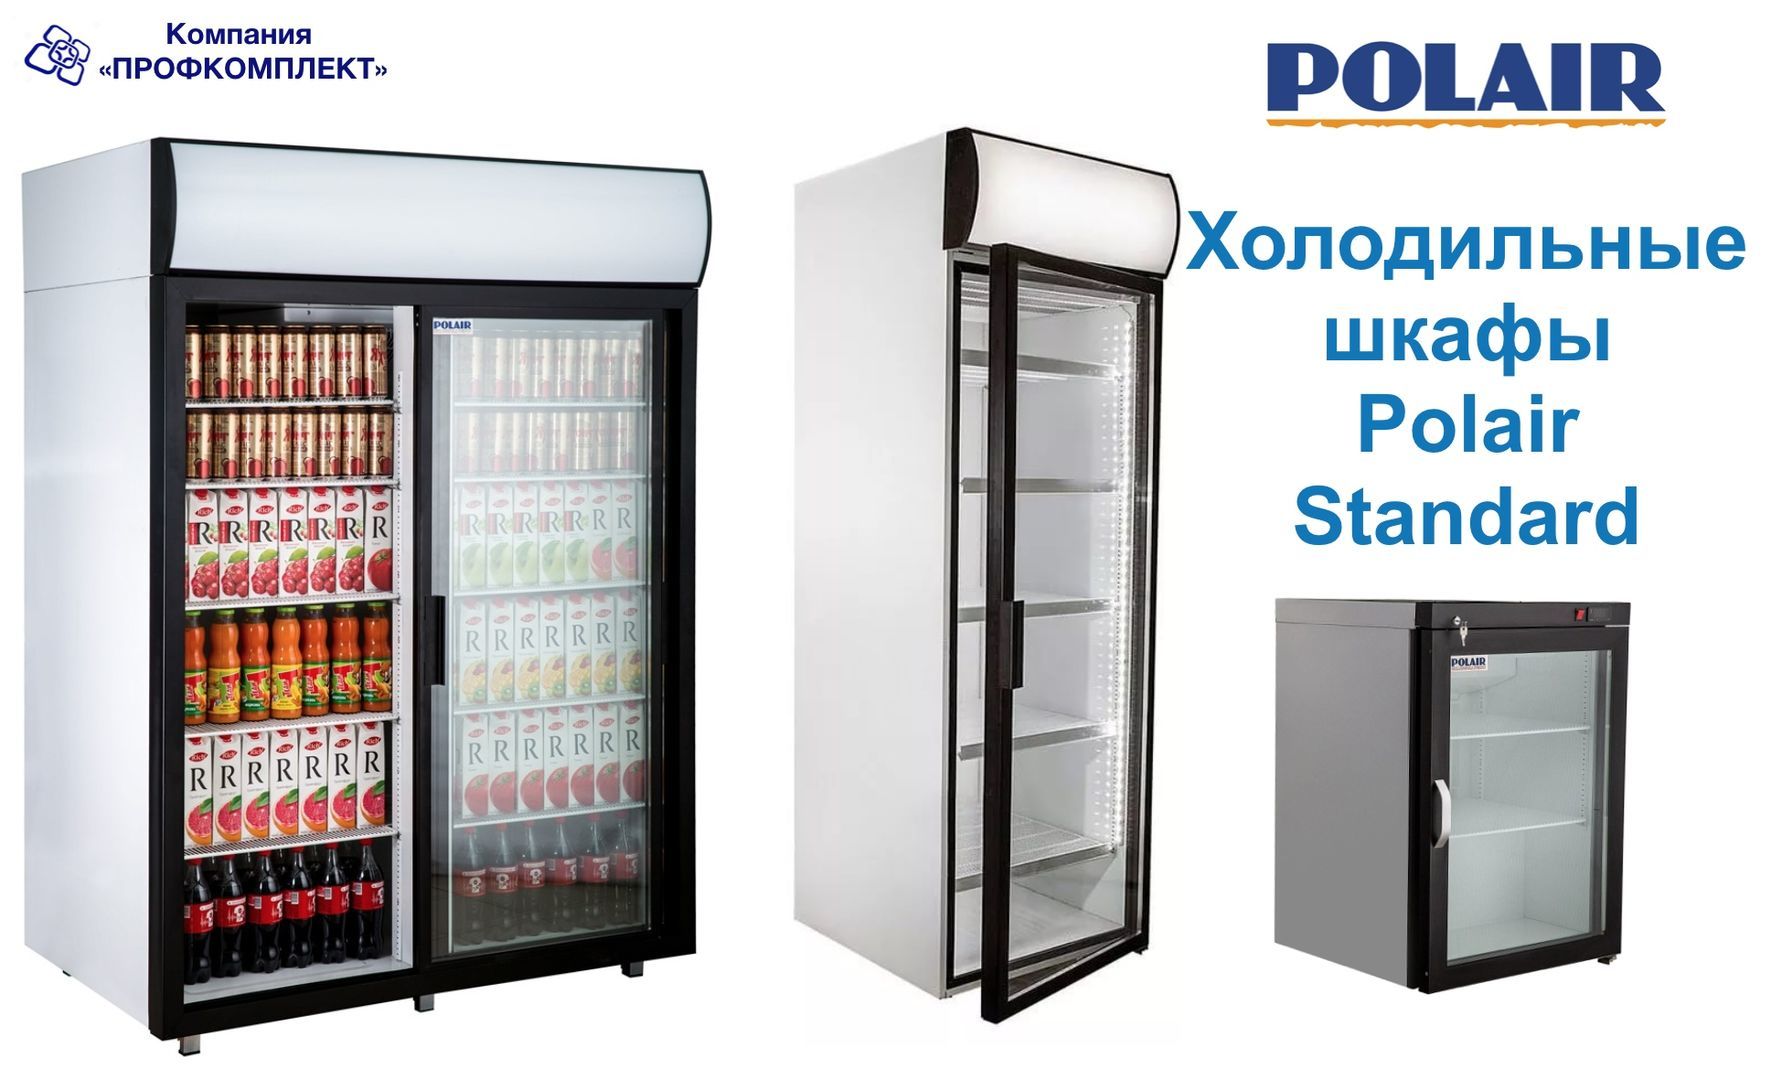 Шкаф холодильный 1 дверь. Холодильный шкаф dm105-s Полаир. Шкаф холодильный Polair Standard dm107-s. Шкаф холодильный Polair dm107-s (ШХ-0,7 ДС). Шкаф холодильный со стеклянной дверью Polair Standard dm110sd-s.